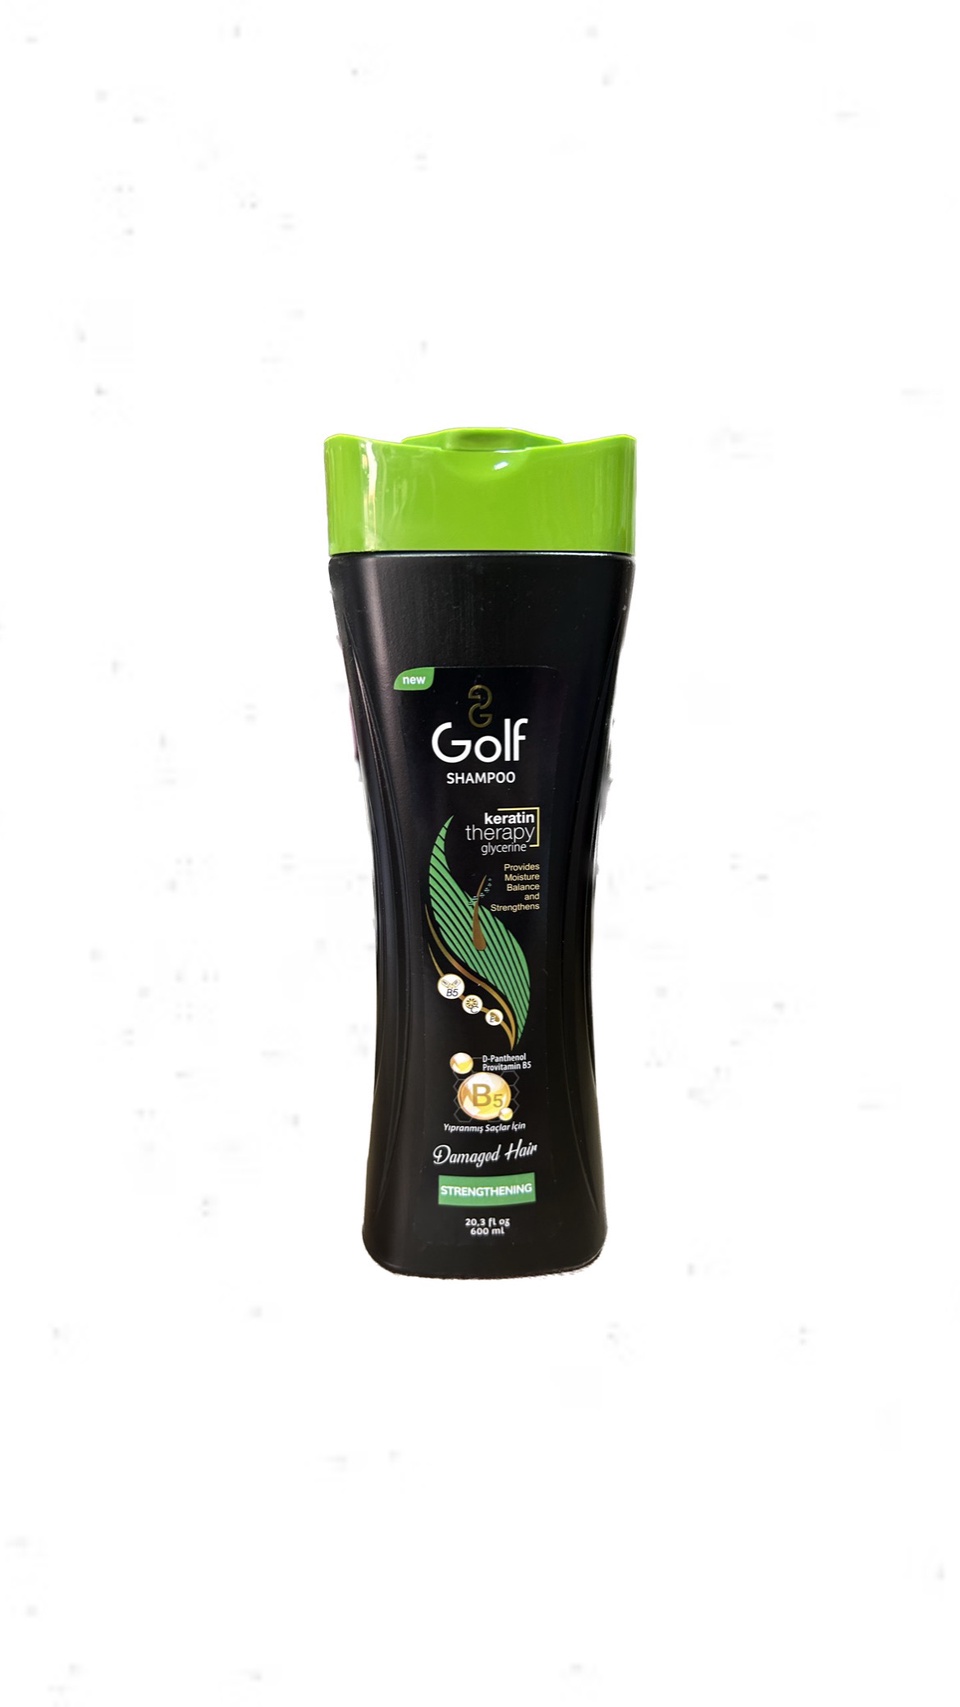 Шампунь Golf Strengthening для поврежденных волос ,600 мл - 250 ₽, заказать онлайн.